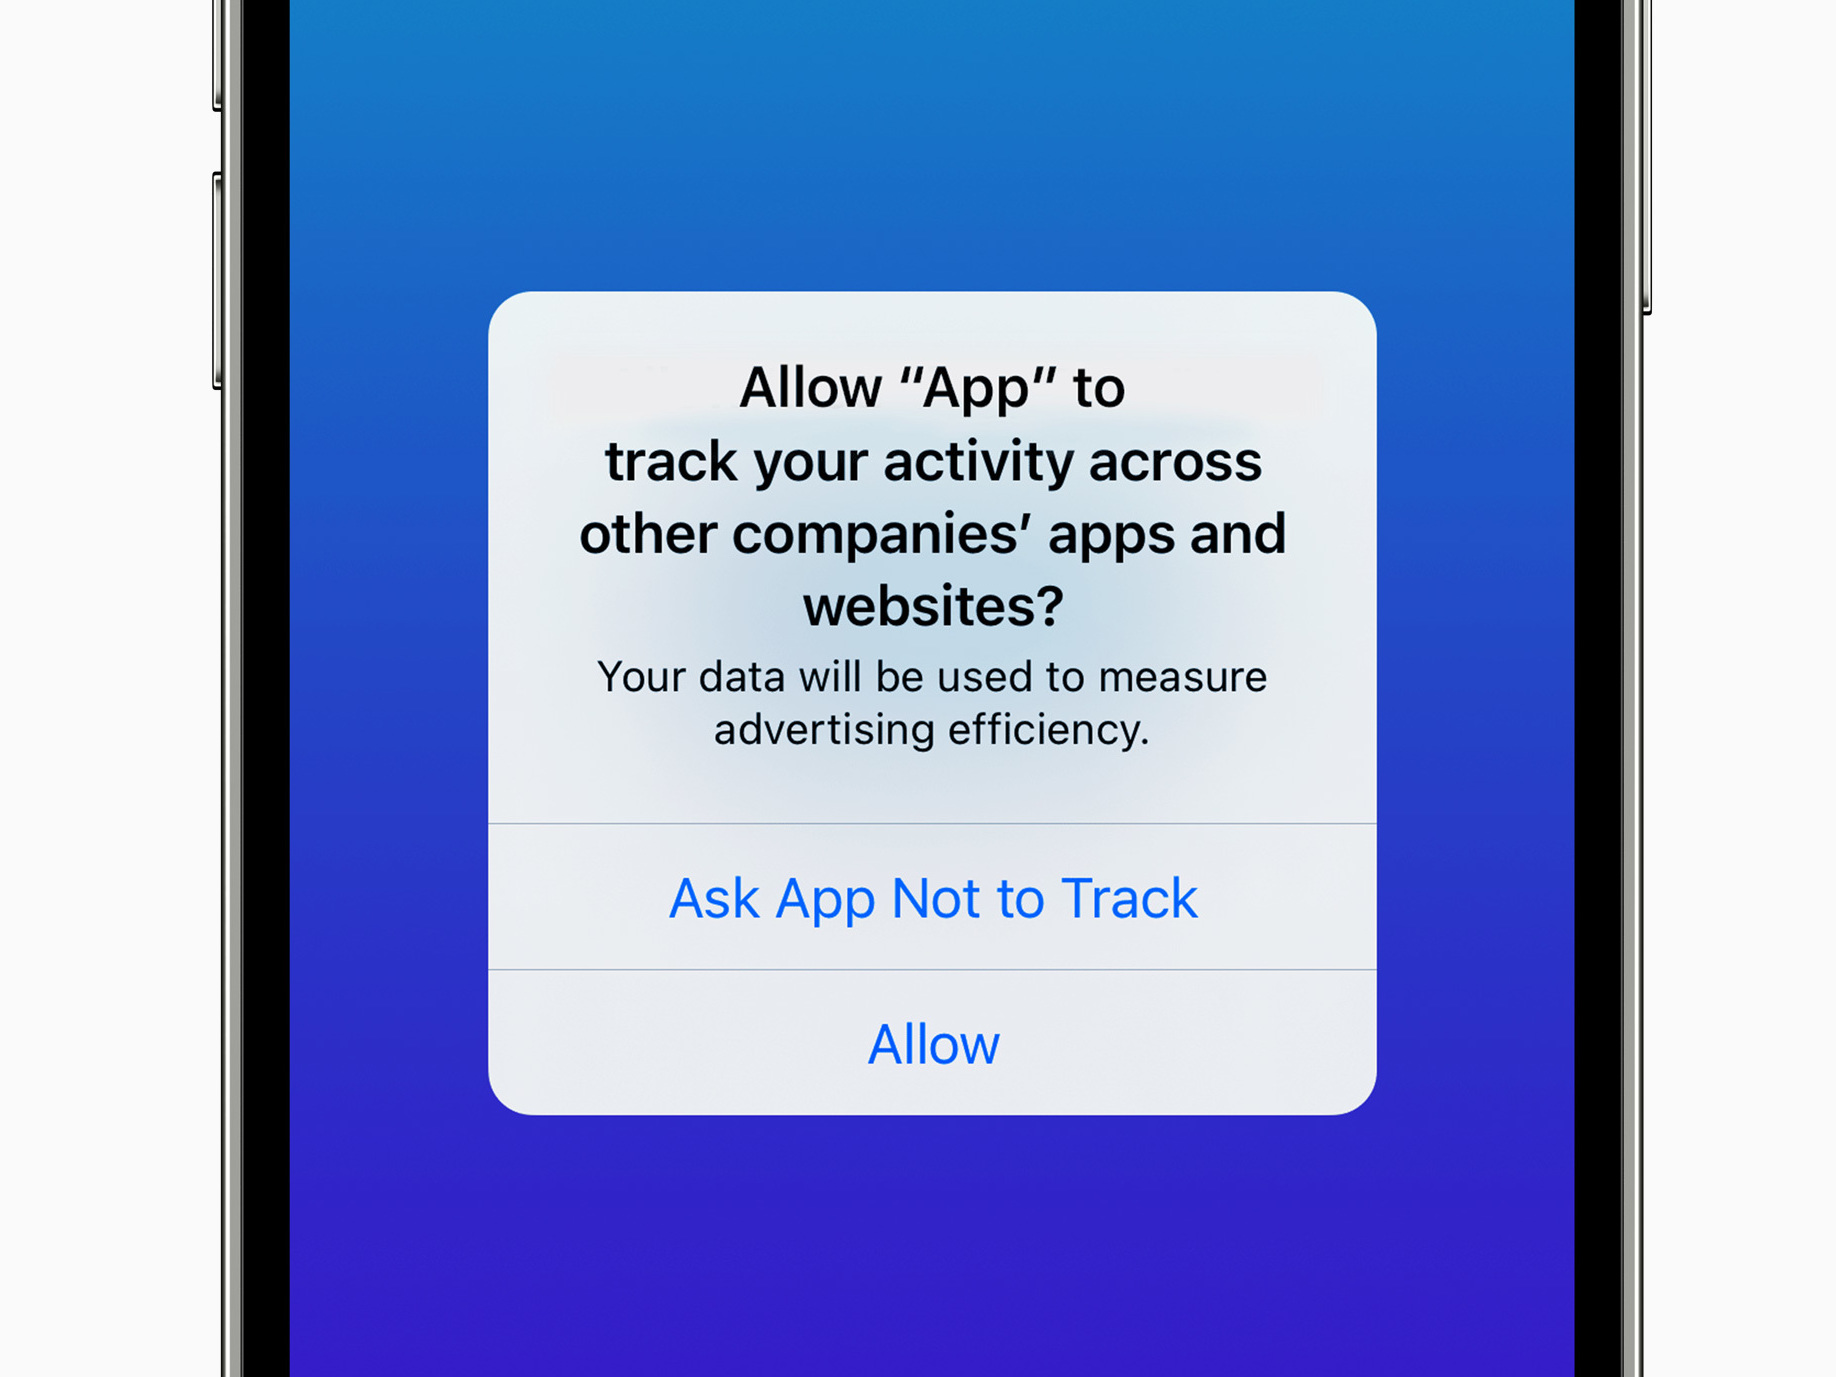 Die App-Tracking-Richtlinie von Apple kostete 10 Milliarden US-Dollar für Social-Media-Plattformen